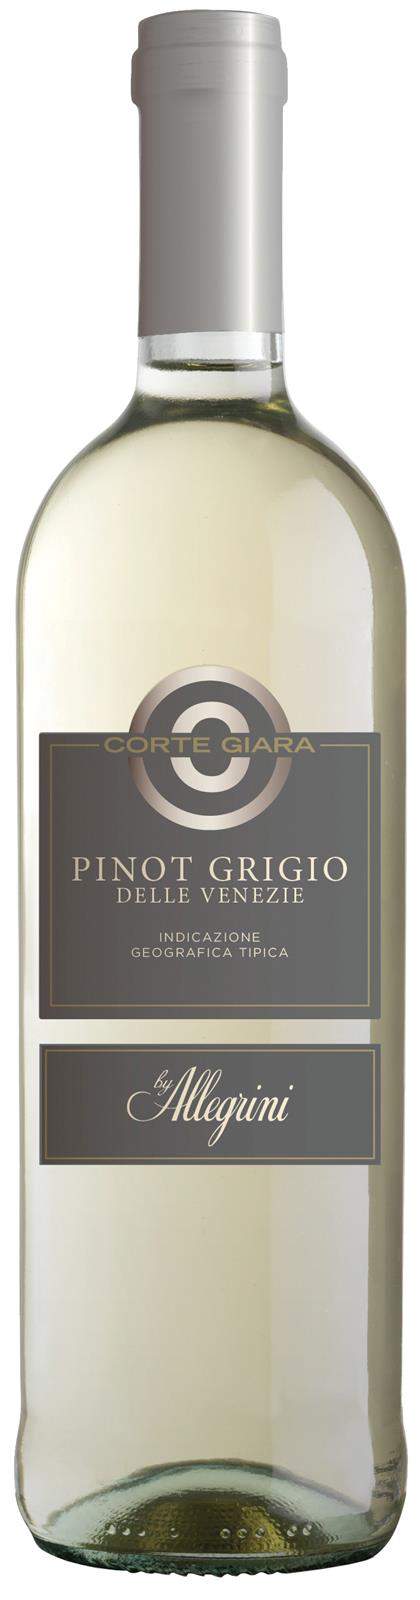 Corte Giara Pinot Grigio 2019 (Italy)